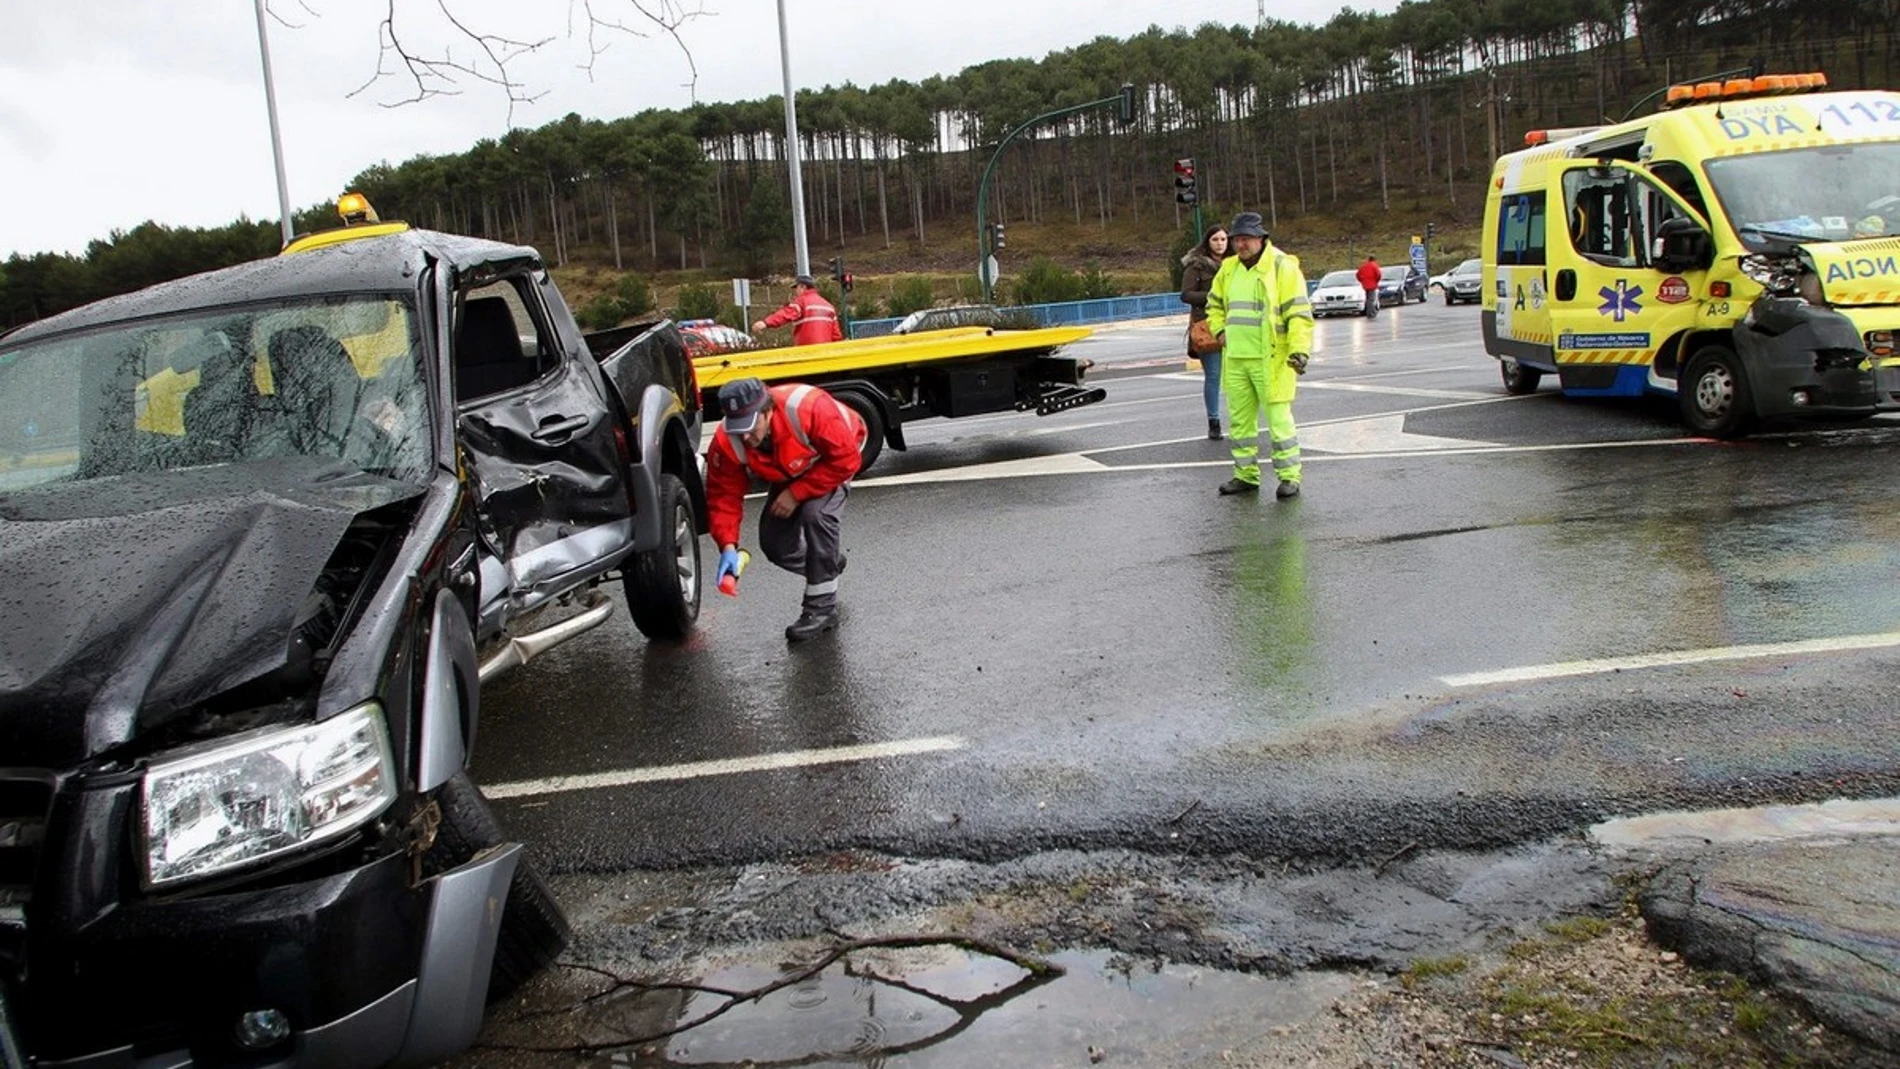 Accidente de tráfico ocurrido en el municipio navarro de Zizur Mayor